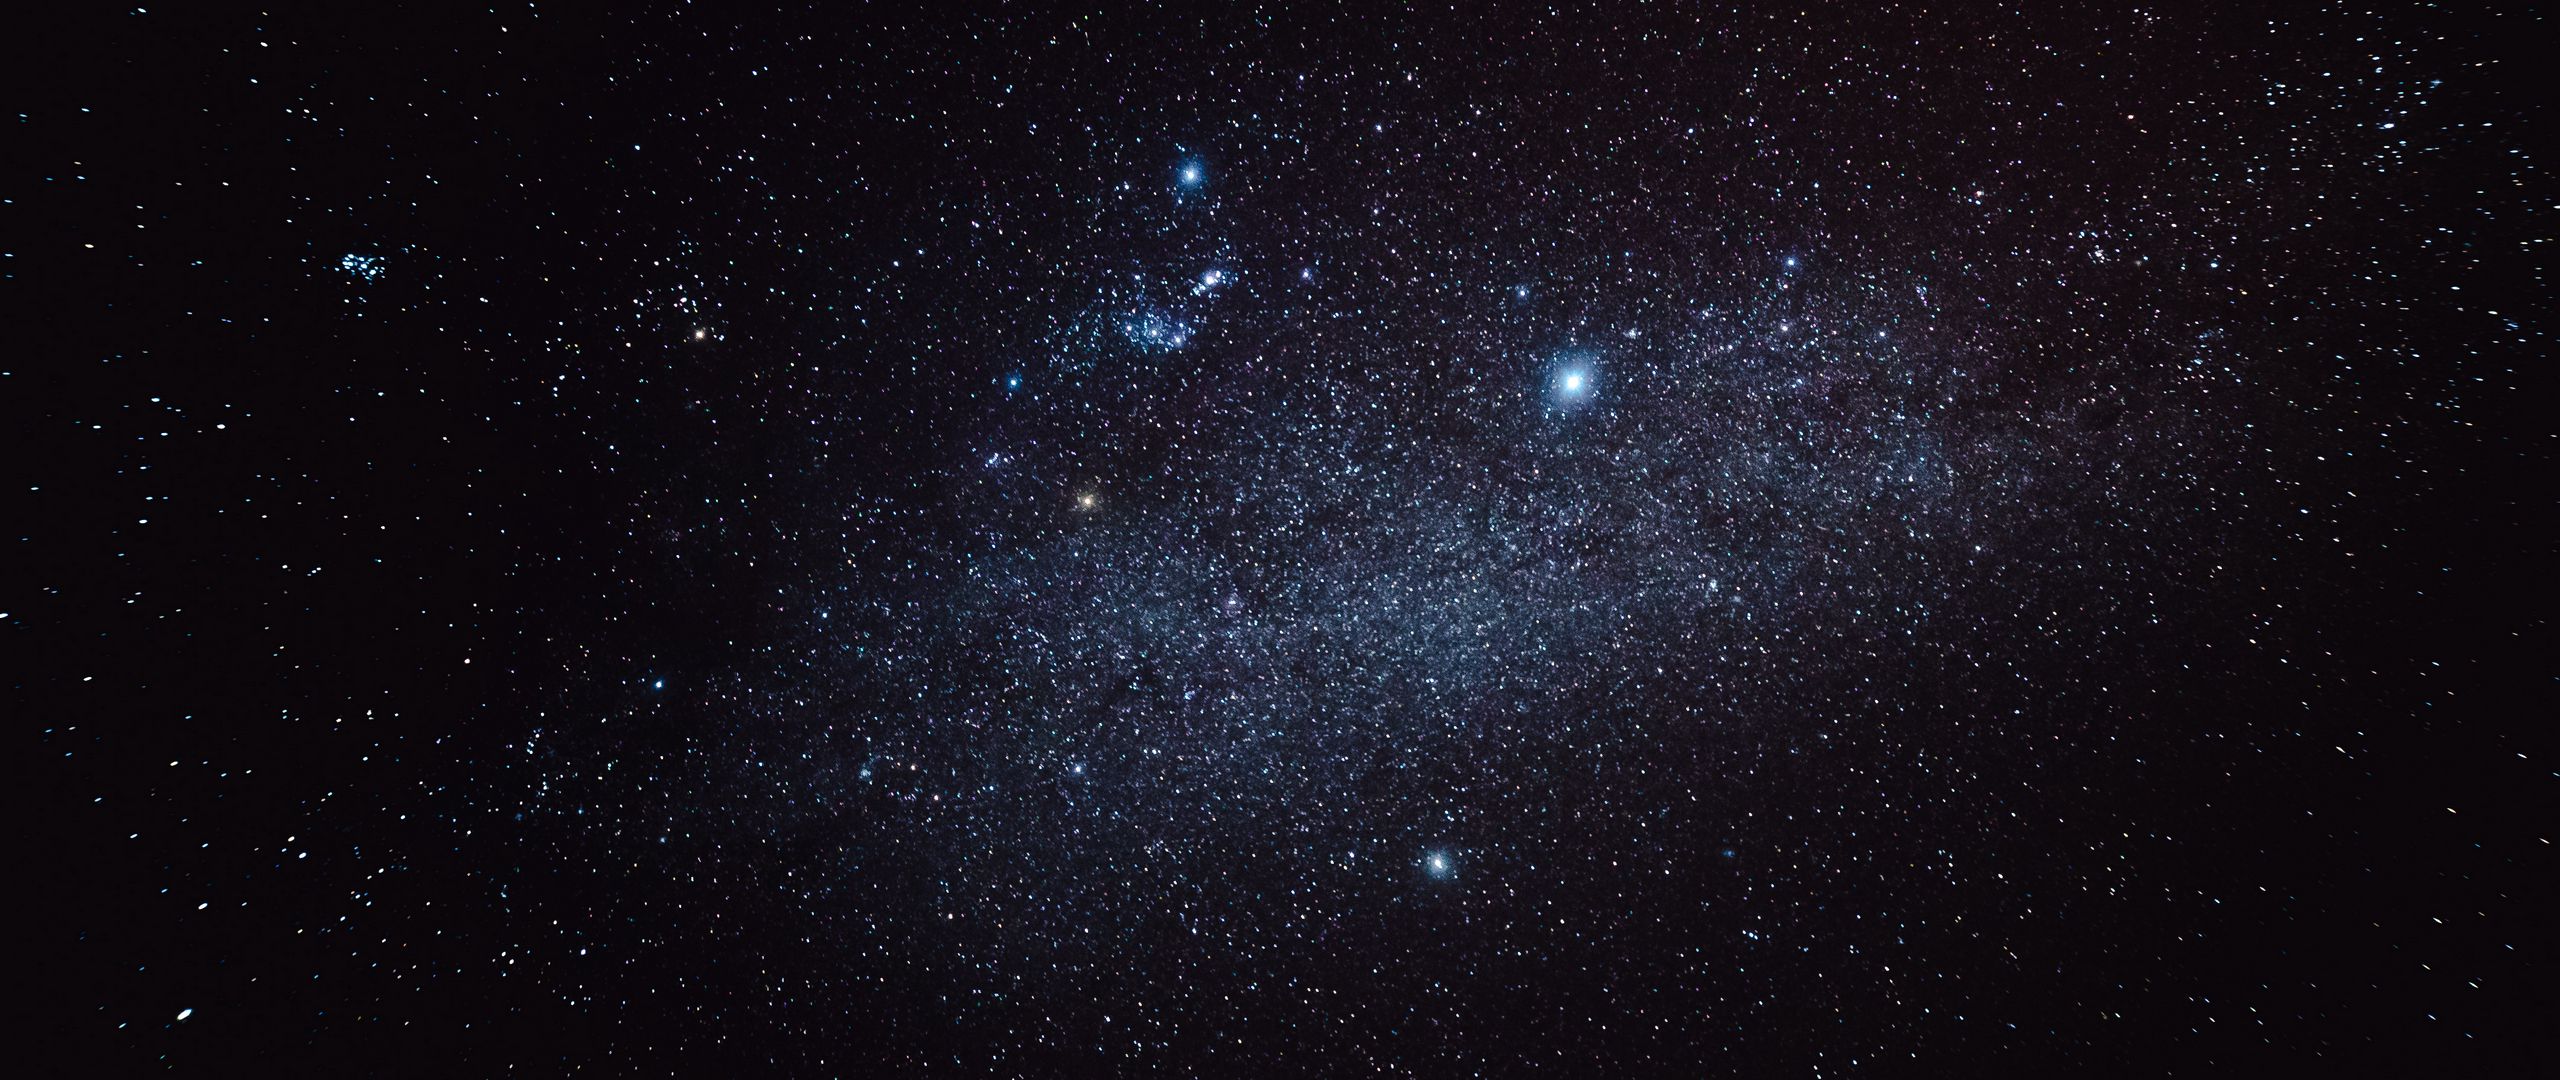 Một bức ảnh hình nền tuyệt đẹp của thiên hà, bầu trời đầy sao và ngôi sao đang chờ đón bạn. Hãy tải ngay hình nền 2560x1080 với thiên hà đầy mê hoặc này và trải nghiệm cảm giác đắm mình vào vũ trụ rộng lớn nhưng không kém phần đáng yêu và thân thiện.